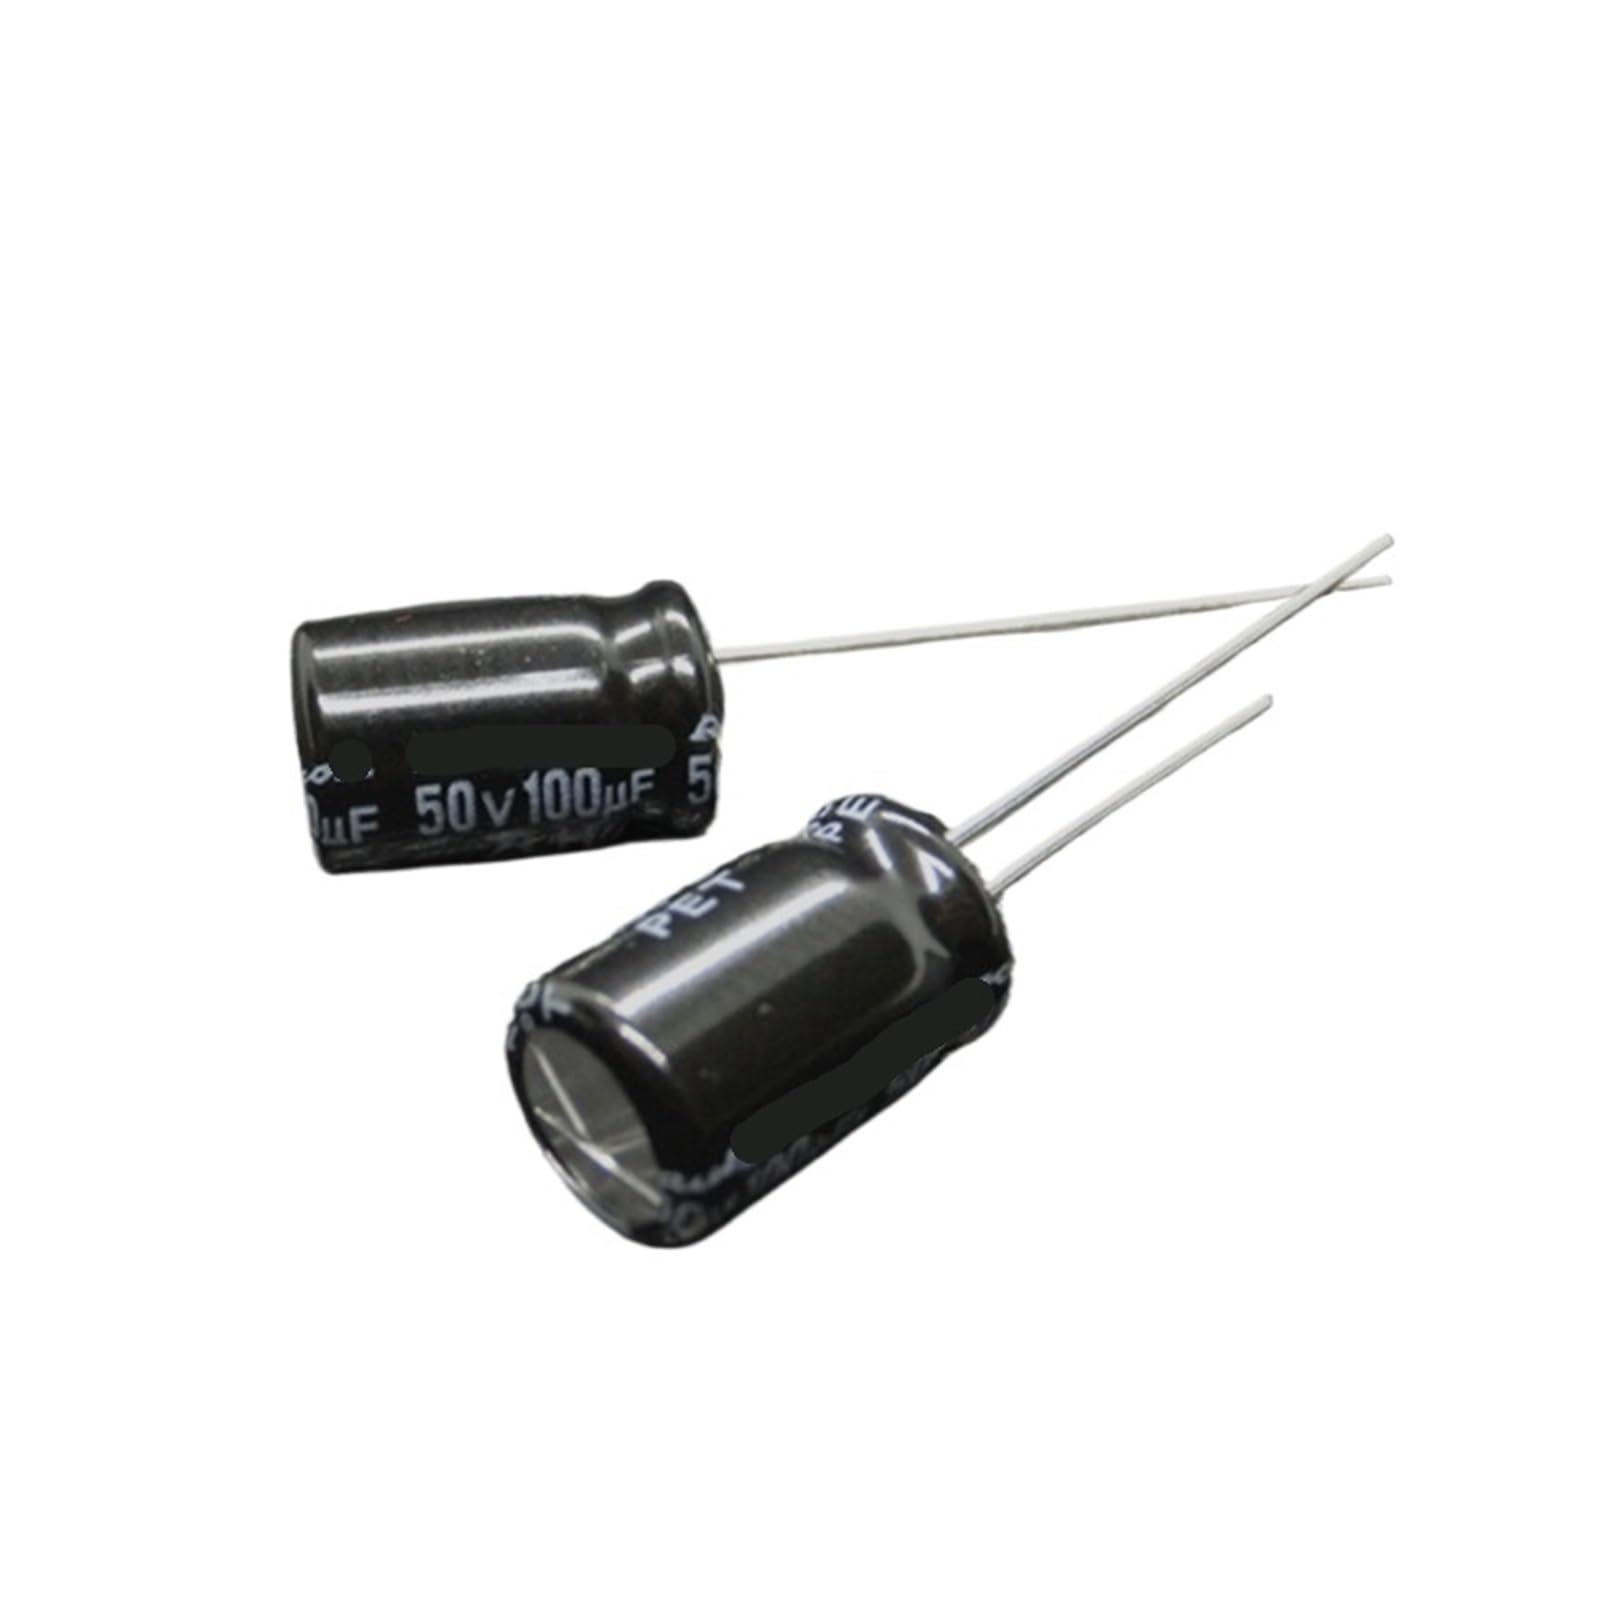 MKNAZ (10pcs) 50v100uF electrolytic Capacitor 8 * 11.5 mm 50V capacitors von MKNAZ